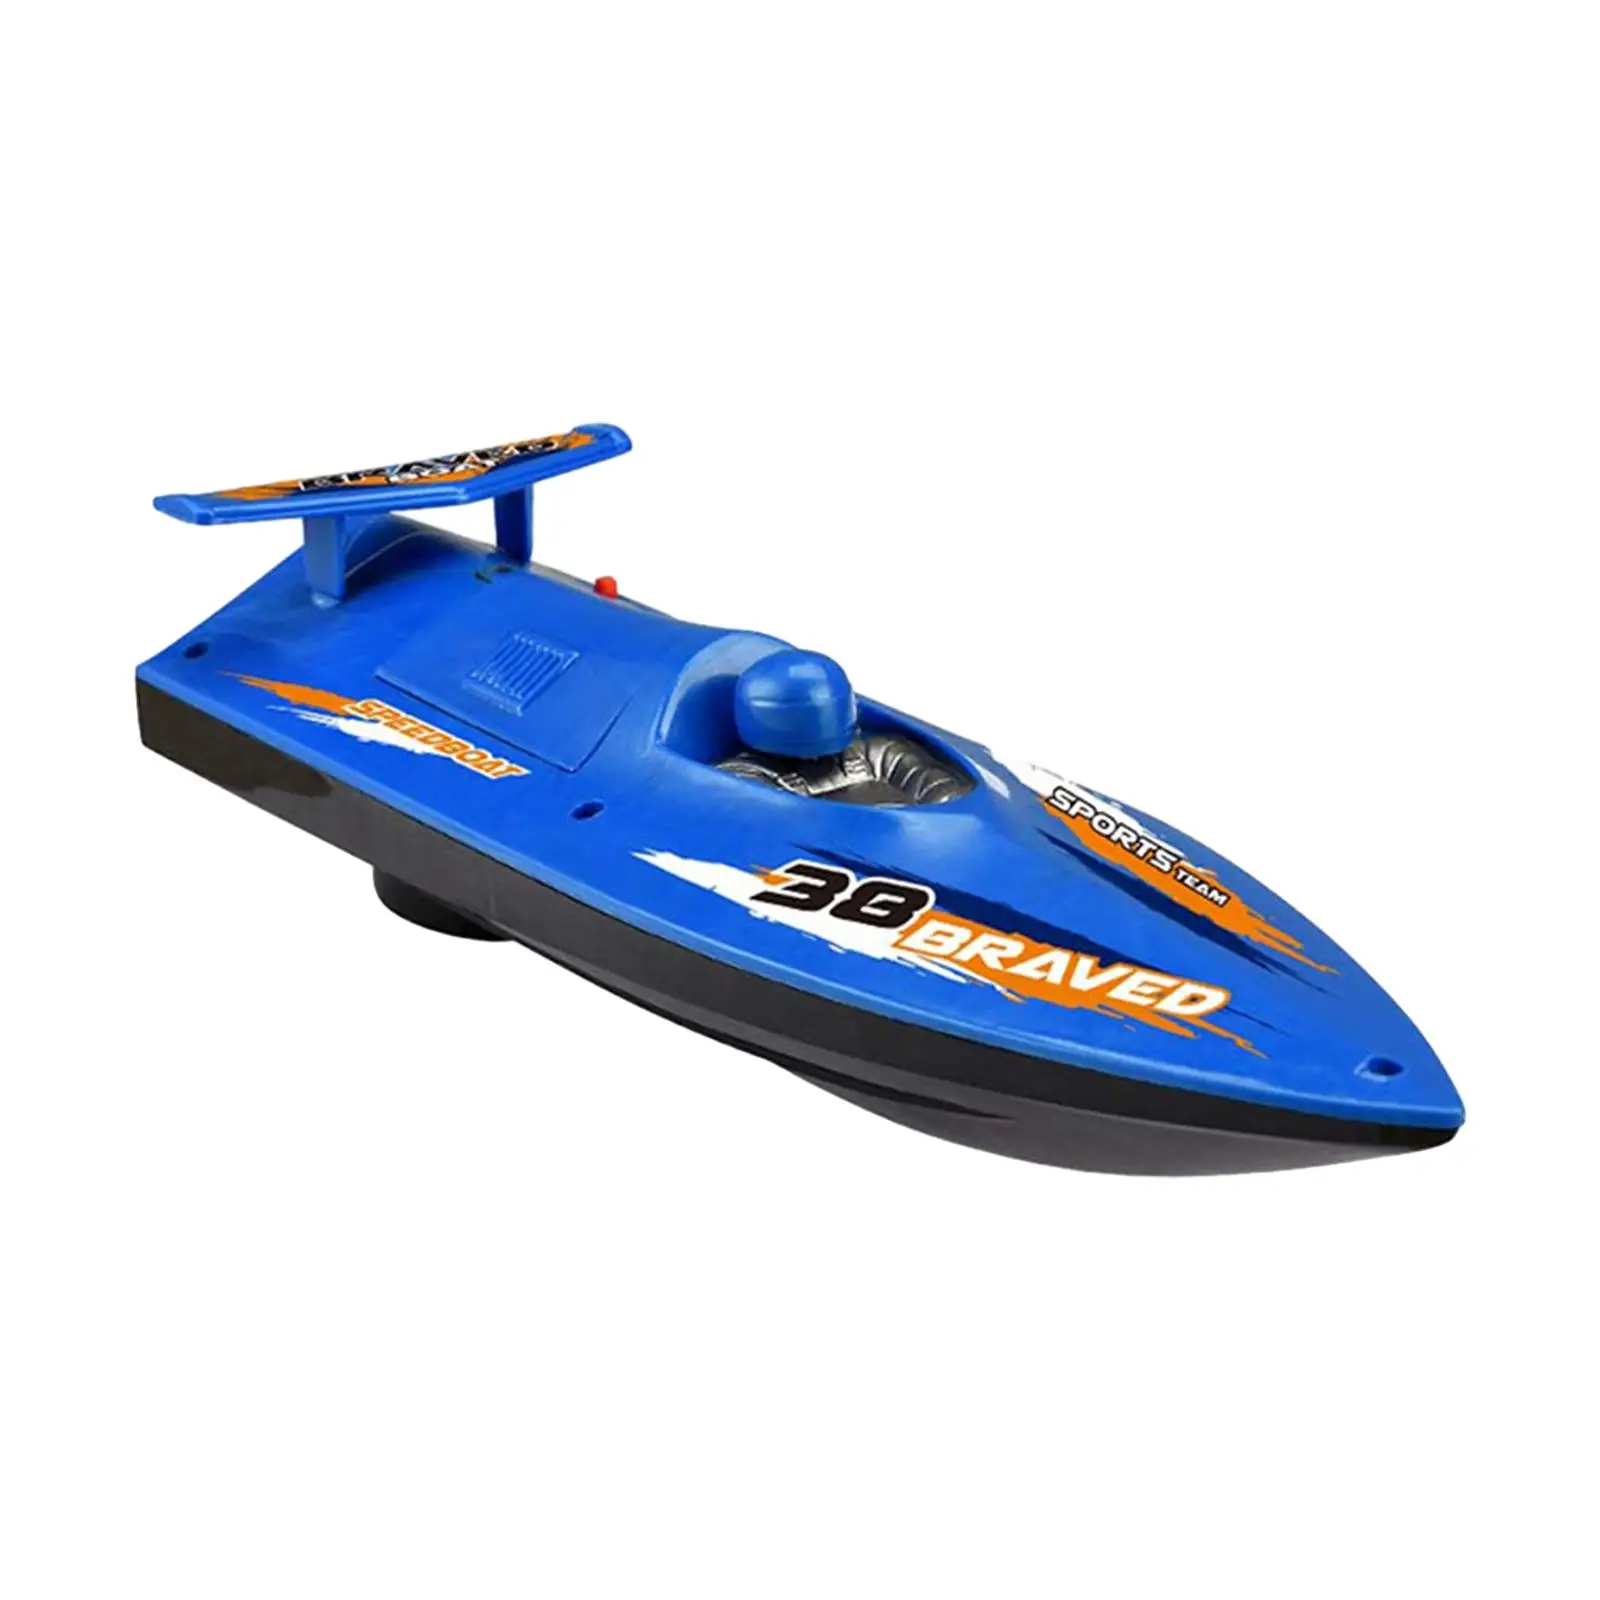 Yacht Pool Toy Beach Toys Speed Boat Bathtub Toy for Lake Bathtub Boys Girls